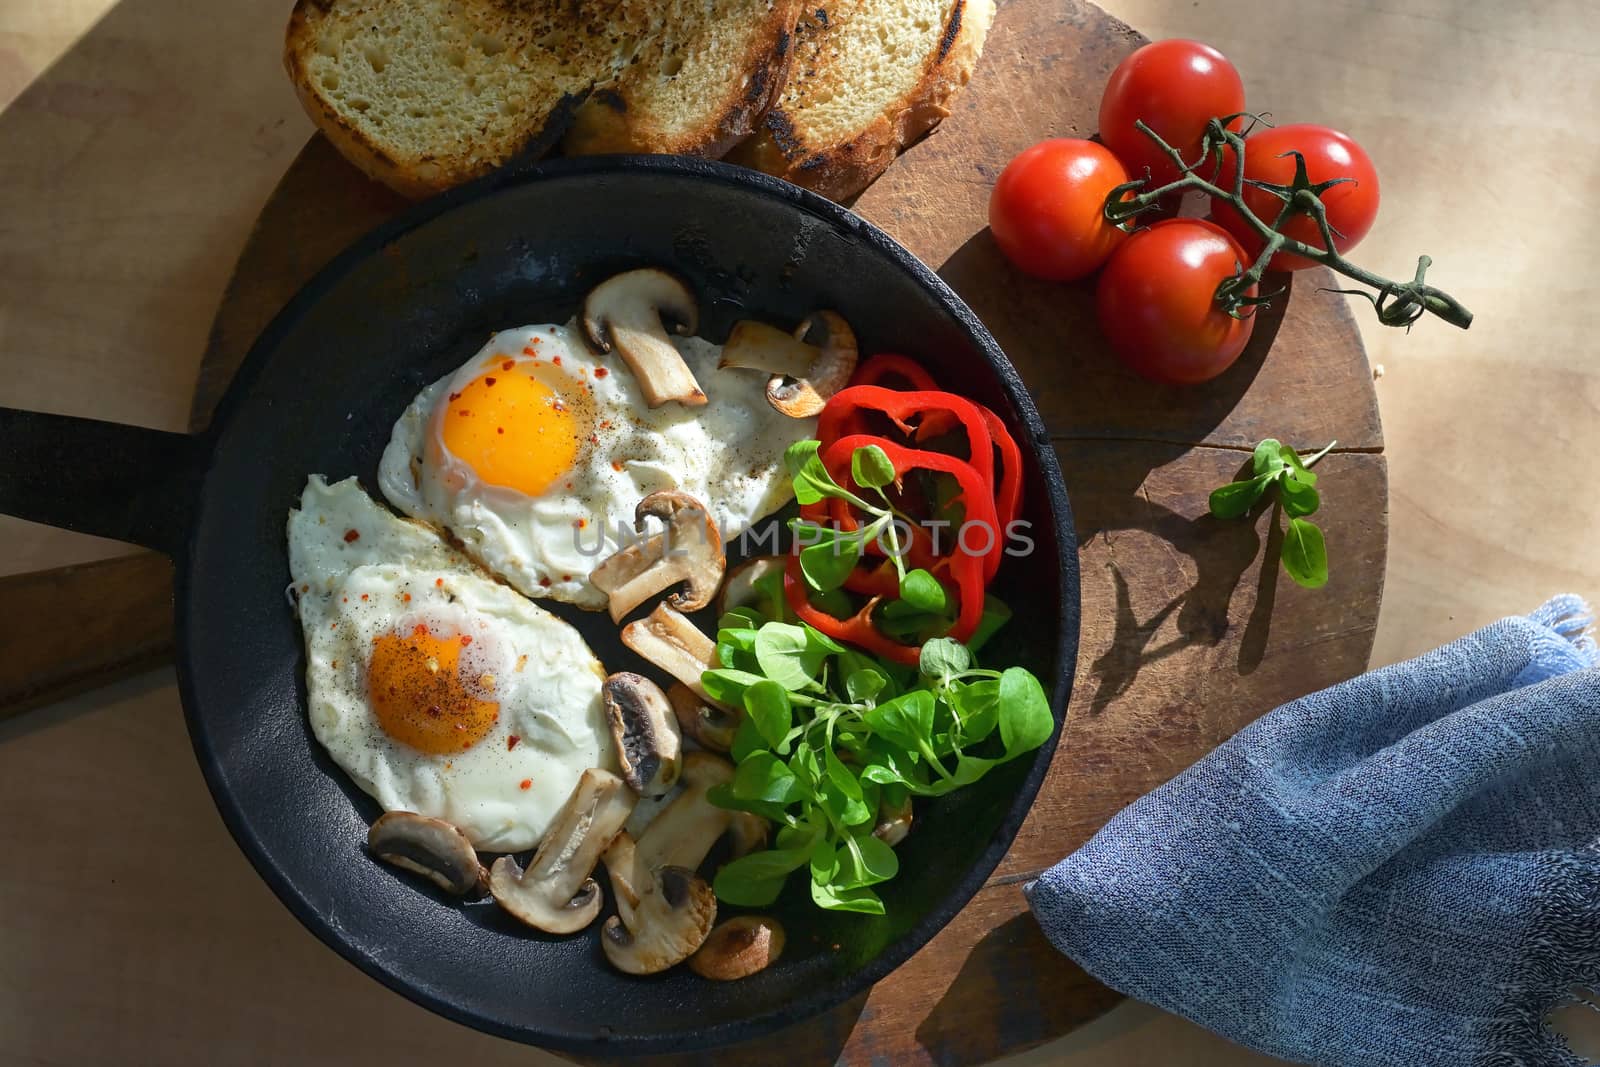 Fried Eggs In A Frying Pan by jordachelr